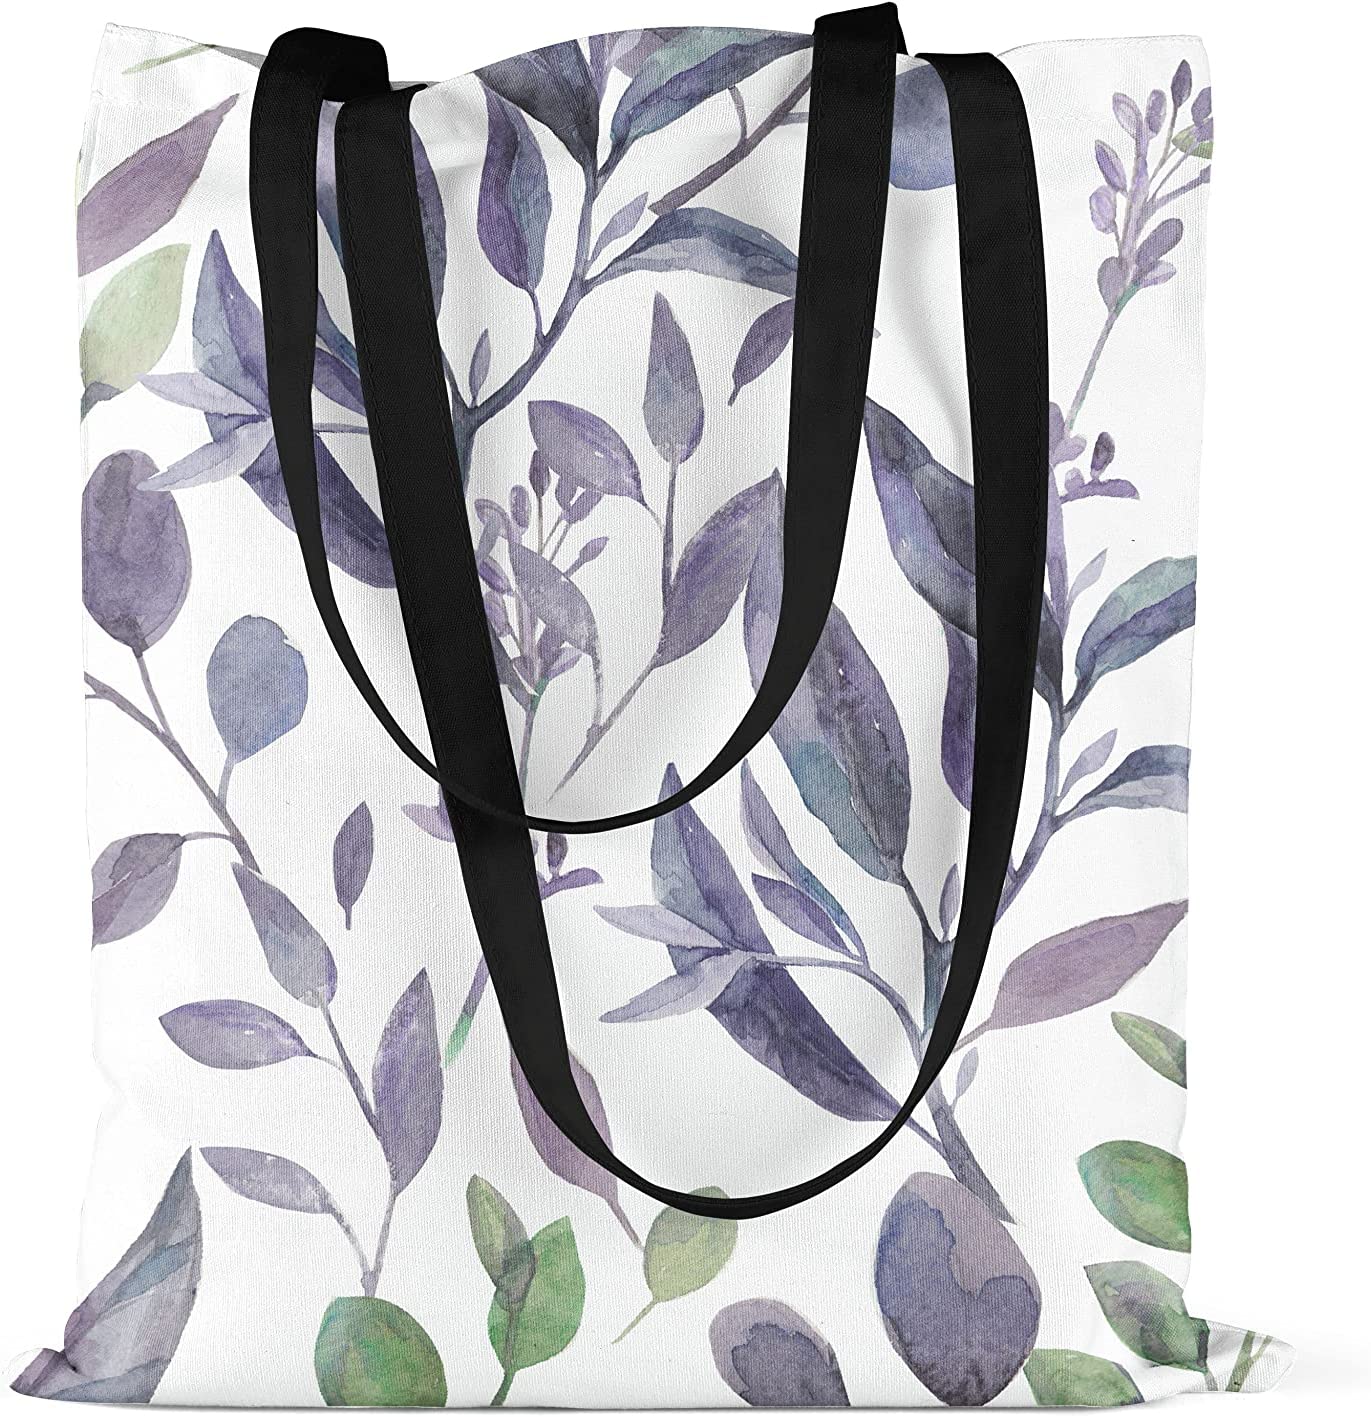 Bonamaison Blue/Purple Floral Design Printed Cream Tote Bag 48 x 55cm RRP 5.99 CLEARANCE XL 3.99